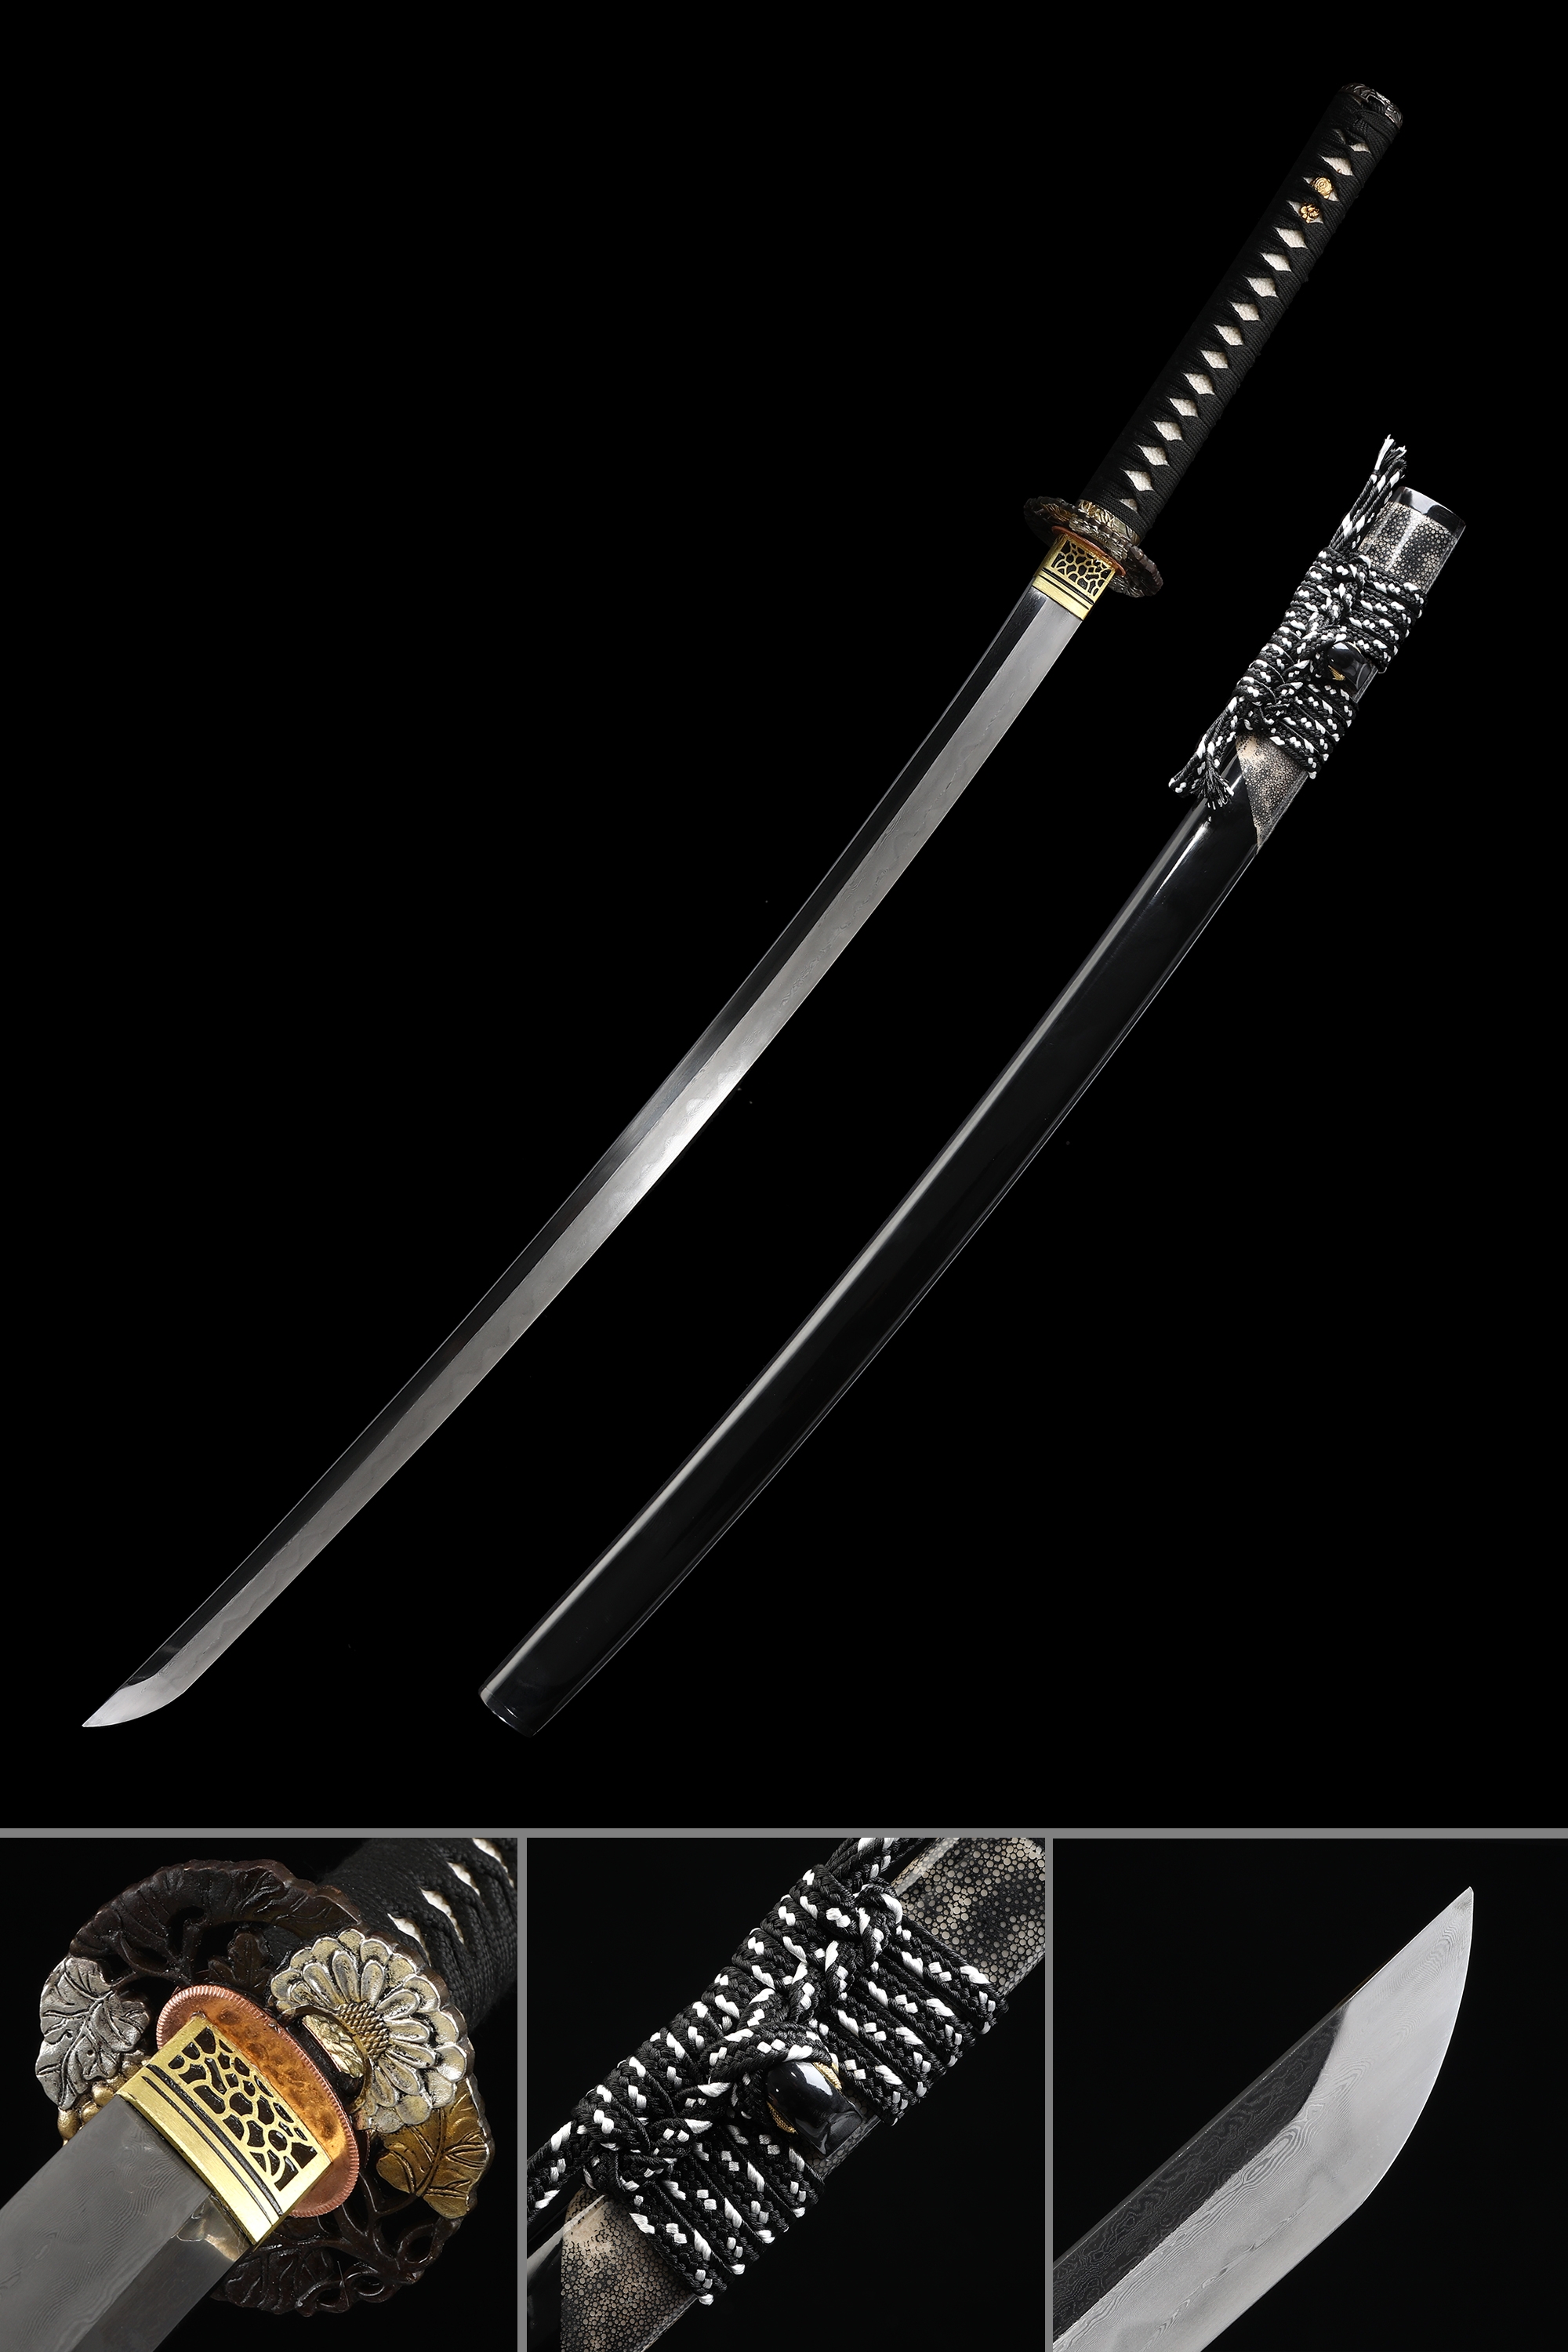 Authentic Japanese Katana Sword T10 Folded Clay Tempered Steel Razor Sharp